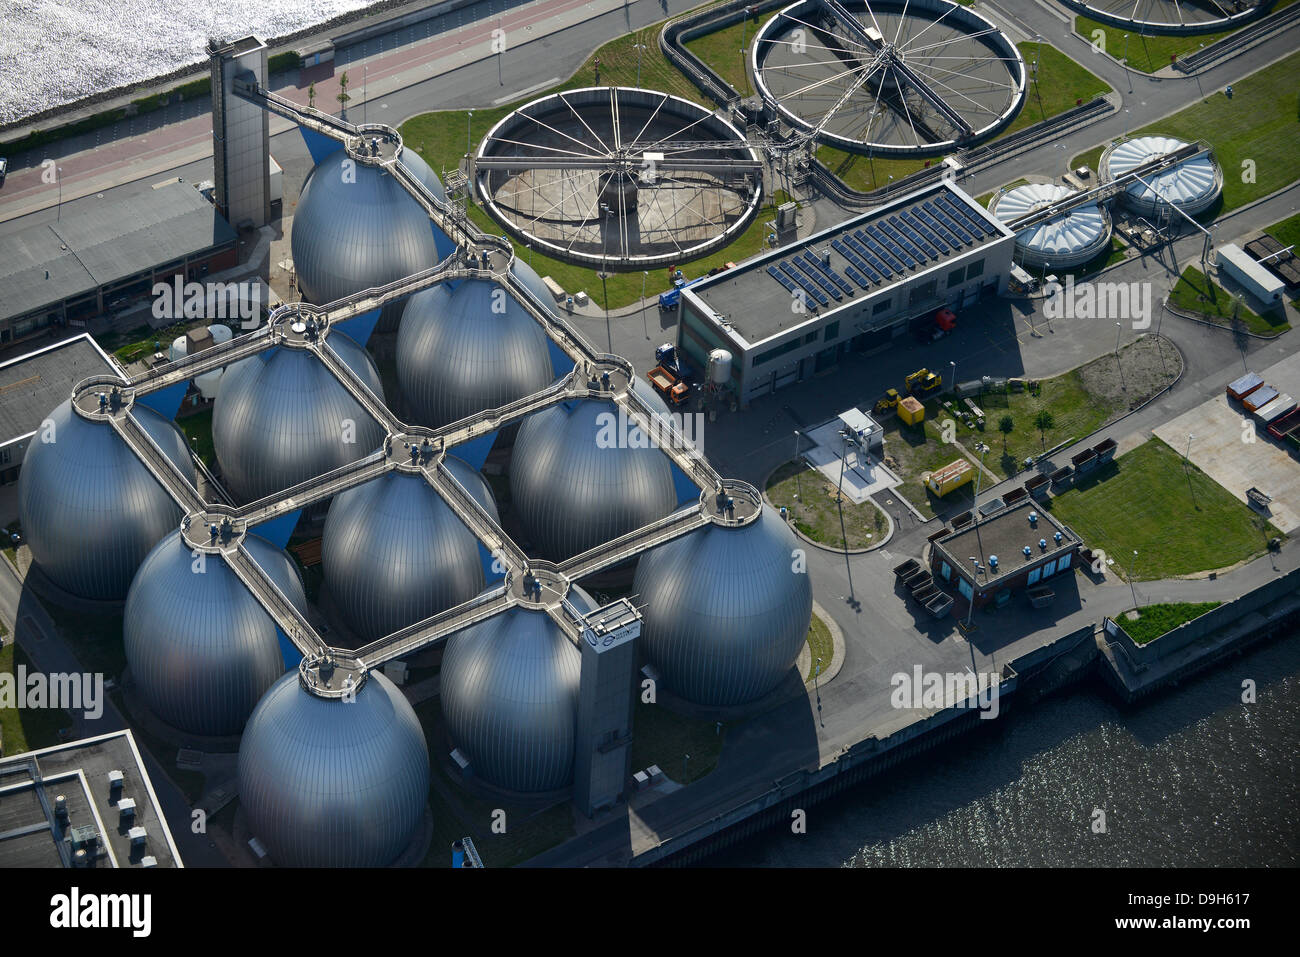 ALLEMAGNE Hambourg, station de traitement des eaux usées et de biogaz de la société Hamburg Wasser, le biogaz est traité à partir des eaux usées dans les réservoirs d'acier, la tour de gaz de digesteur et le bassin de Clarifier, la boue de Sewage est brûlée Banque D'Images